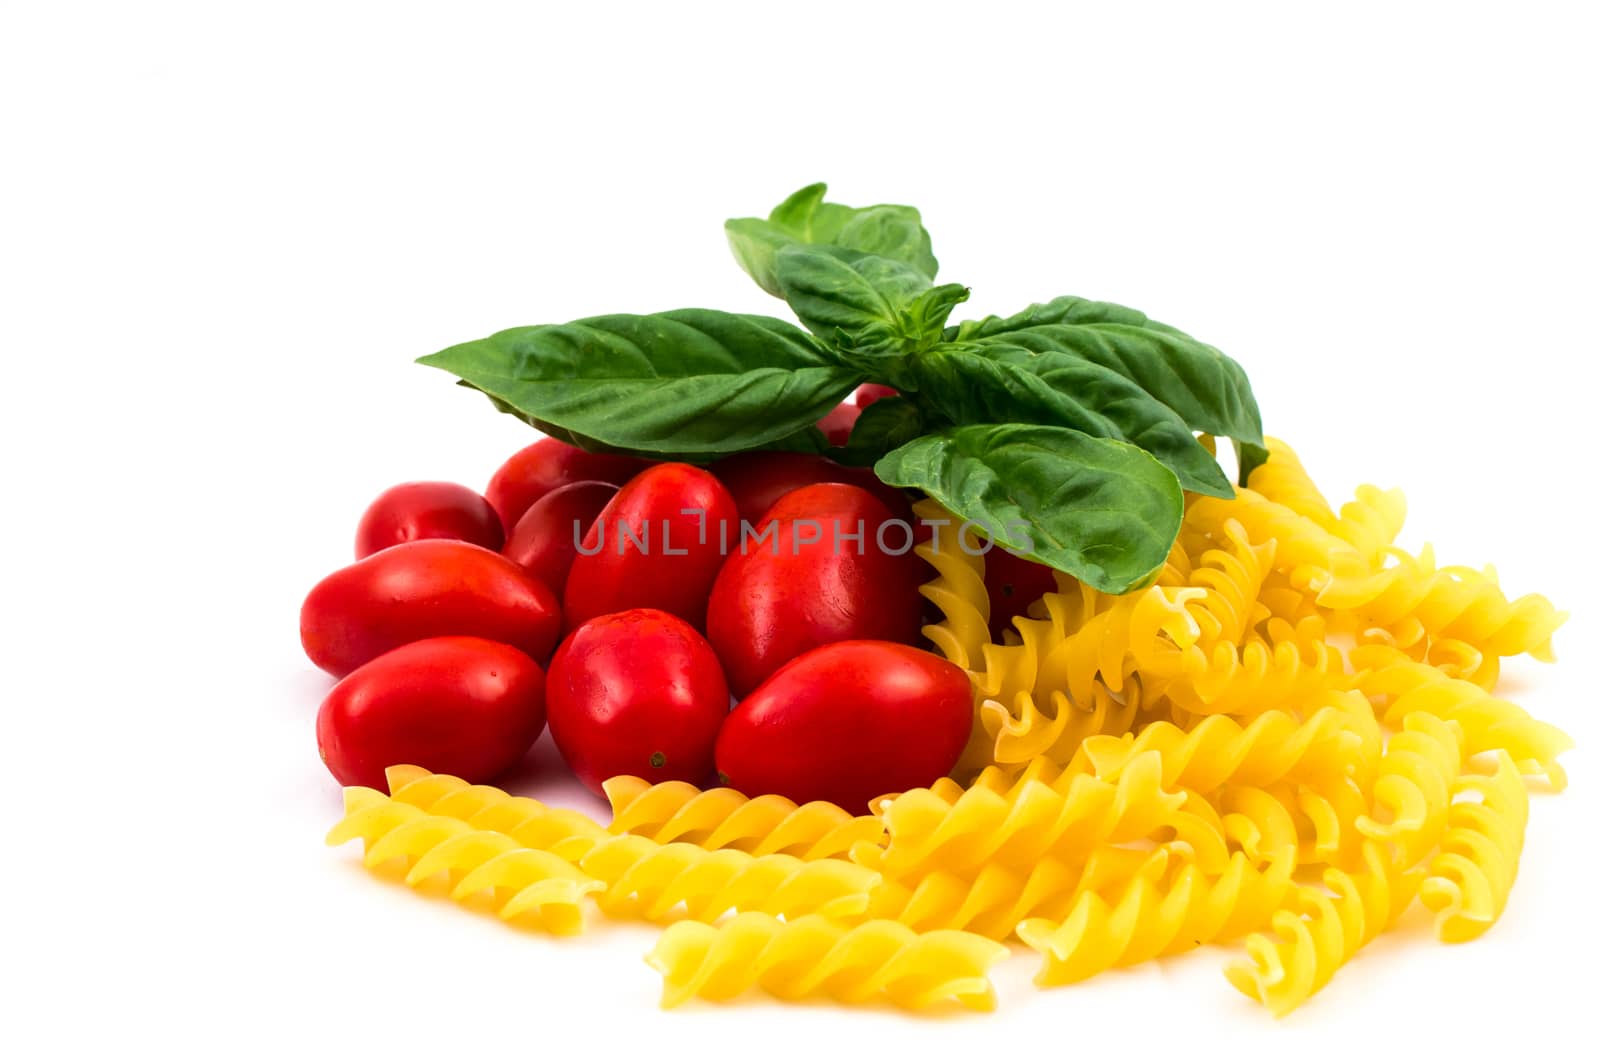 pasta, San Marzano tomatoes and basil